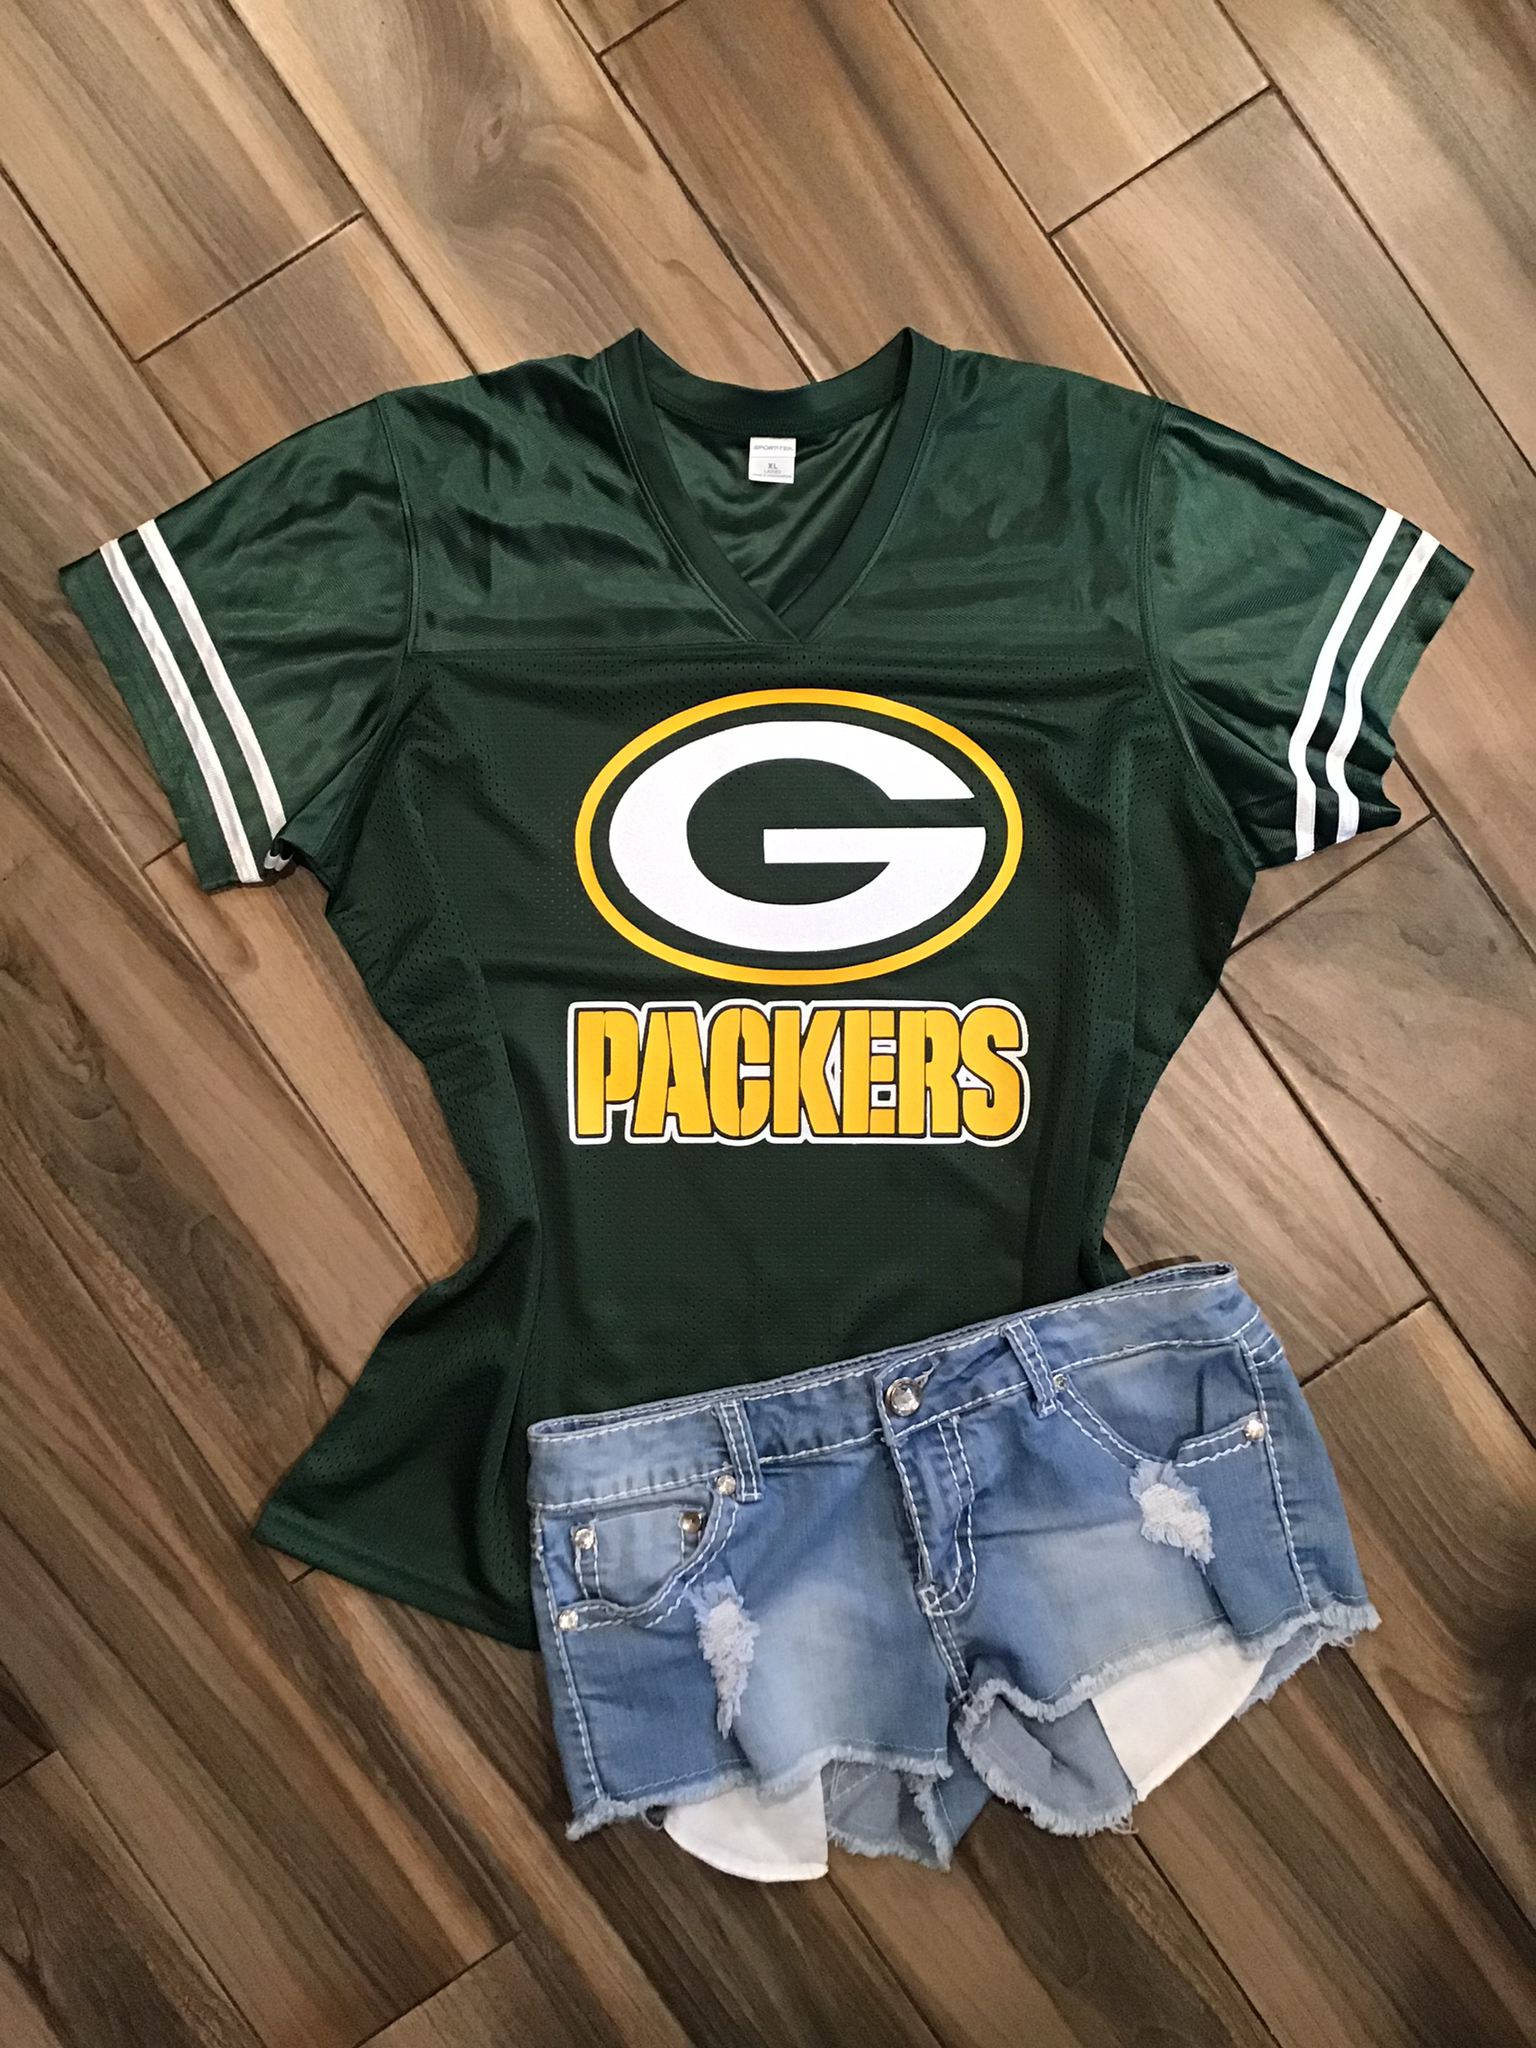 Lulu Grace Designs Green Bay Packers Inspired Glitter Top: NFL Football Fan Gear & Apparel M / Ladies V-Neck Tee